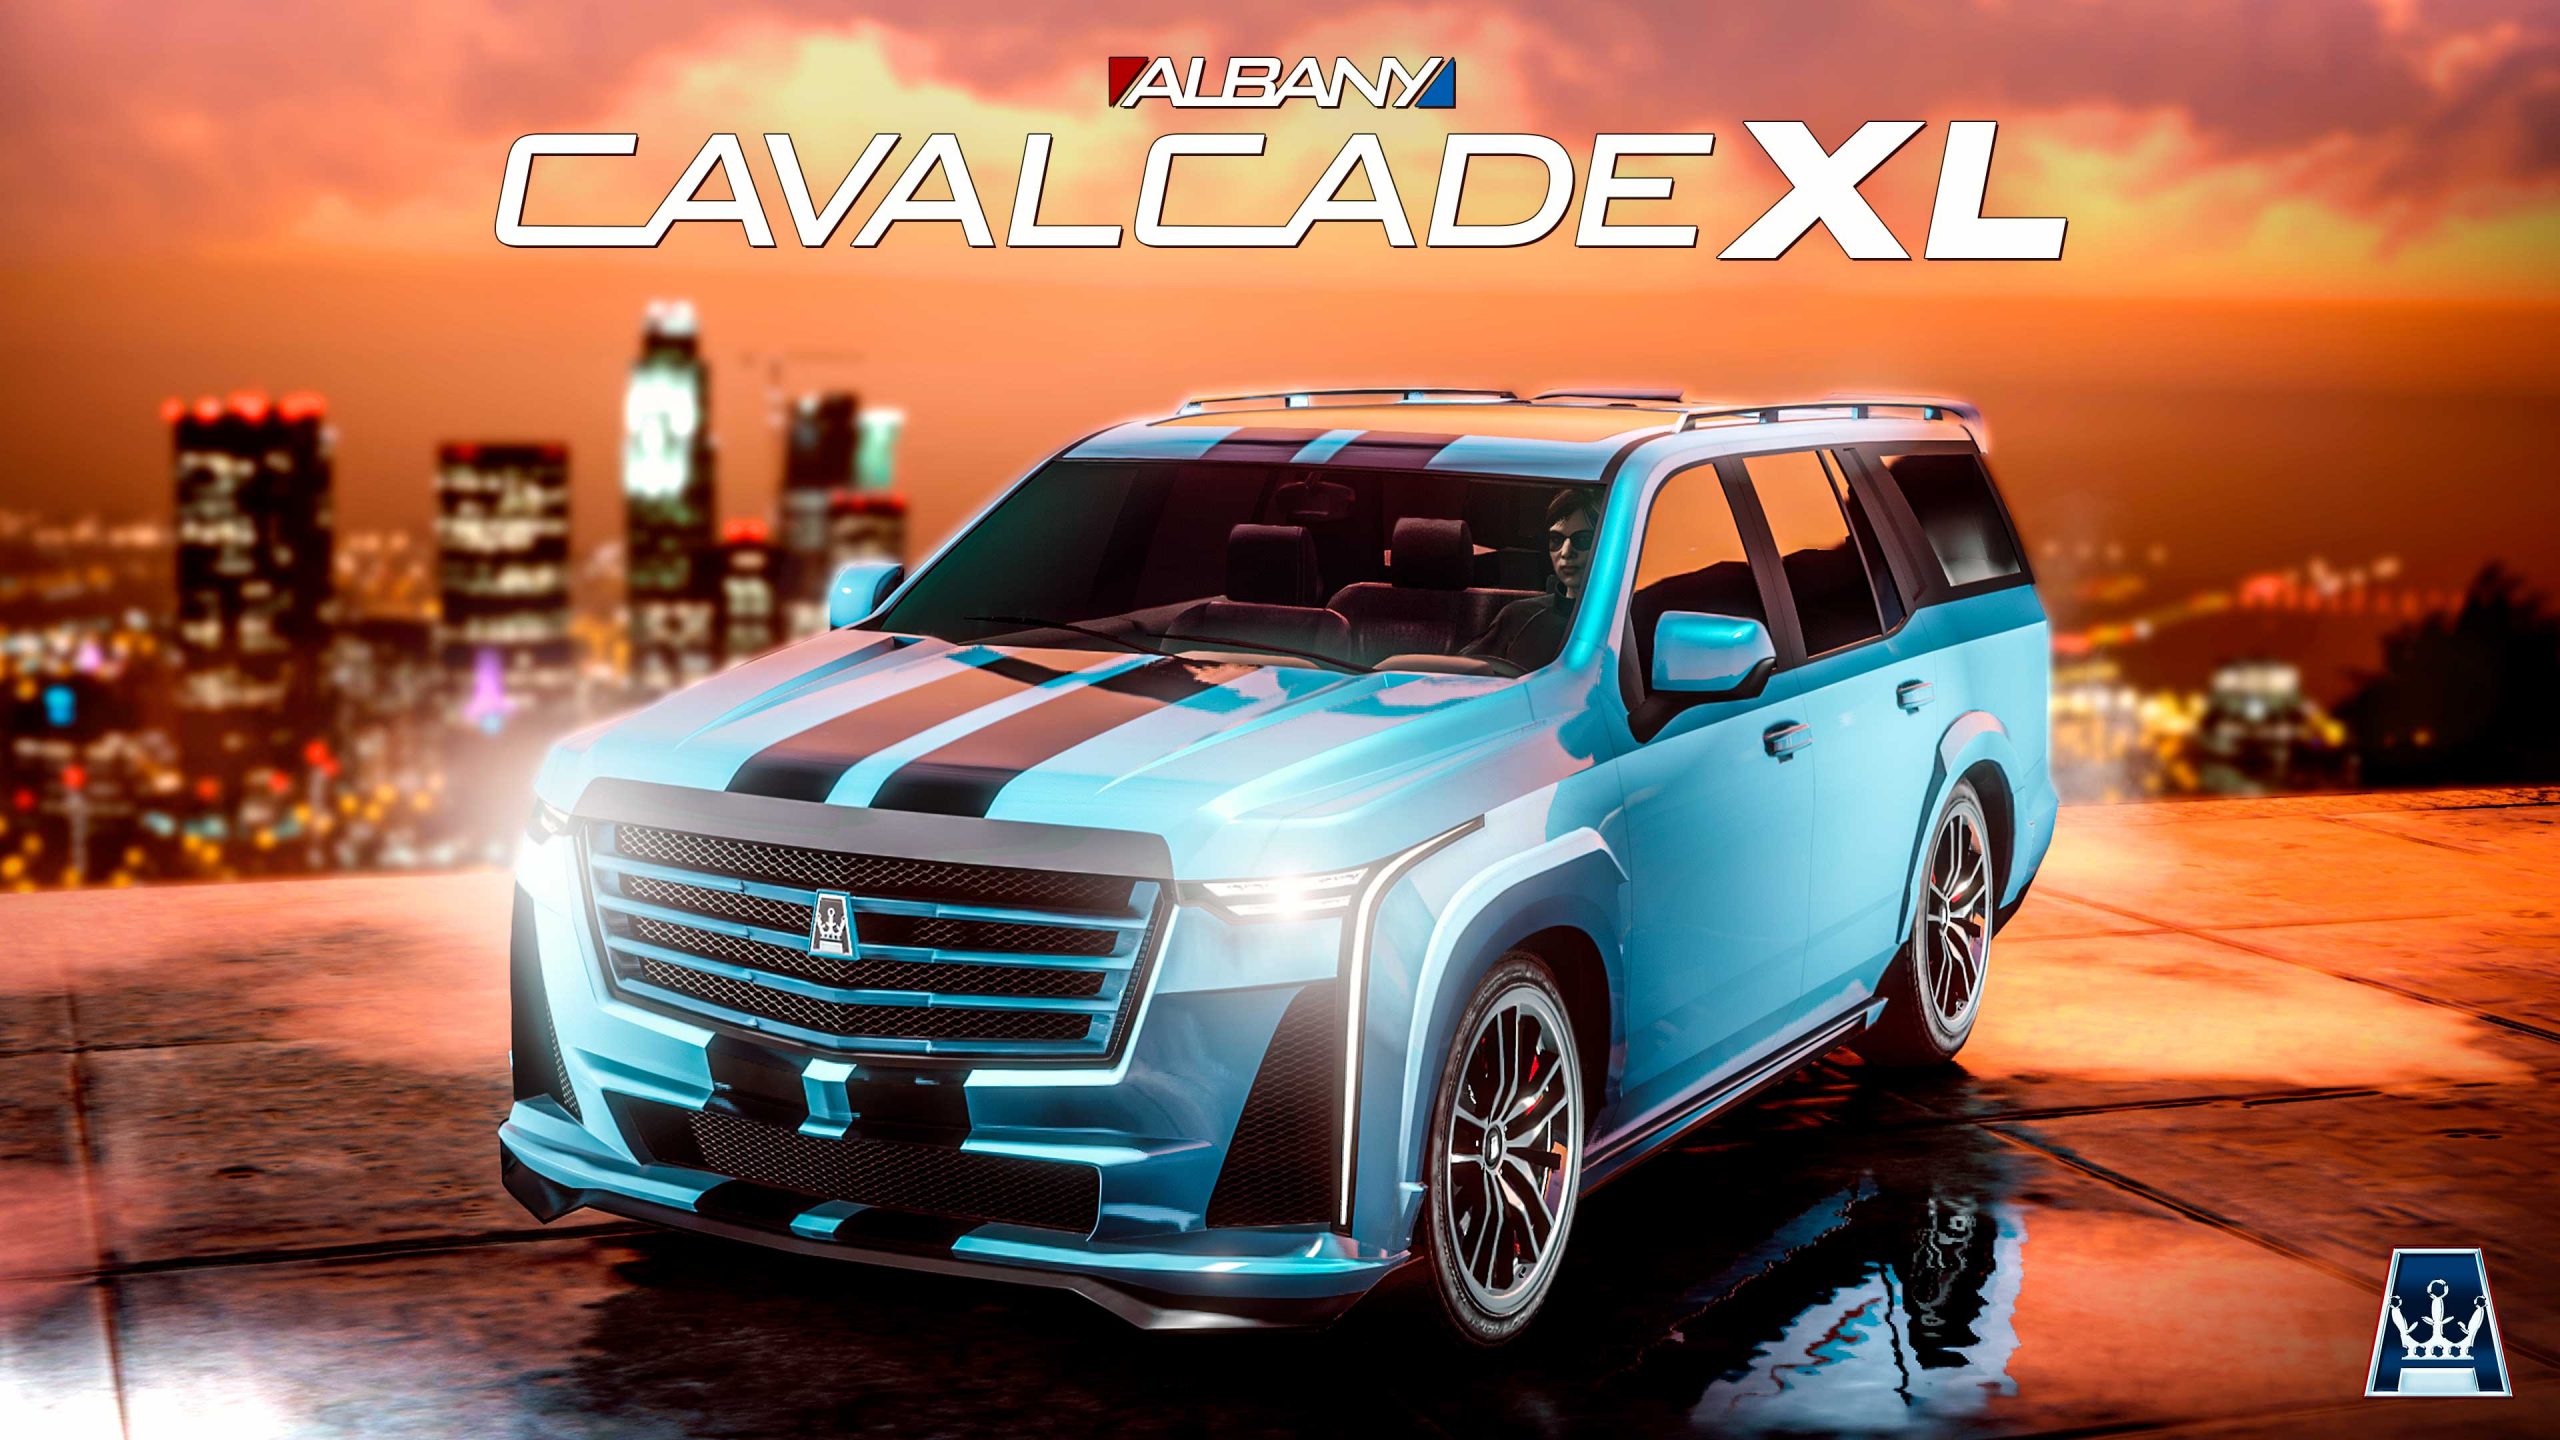 L'Albany Cavalcade XL est maintenant disponible dans GTA Online